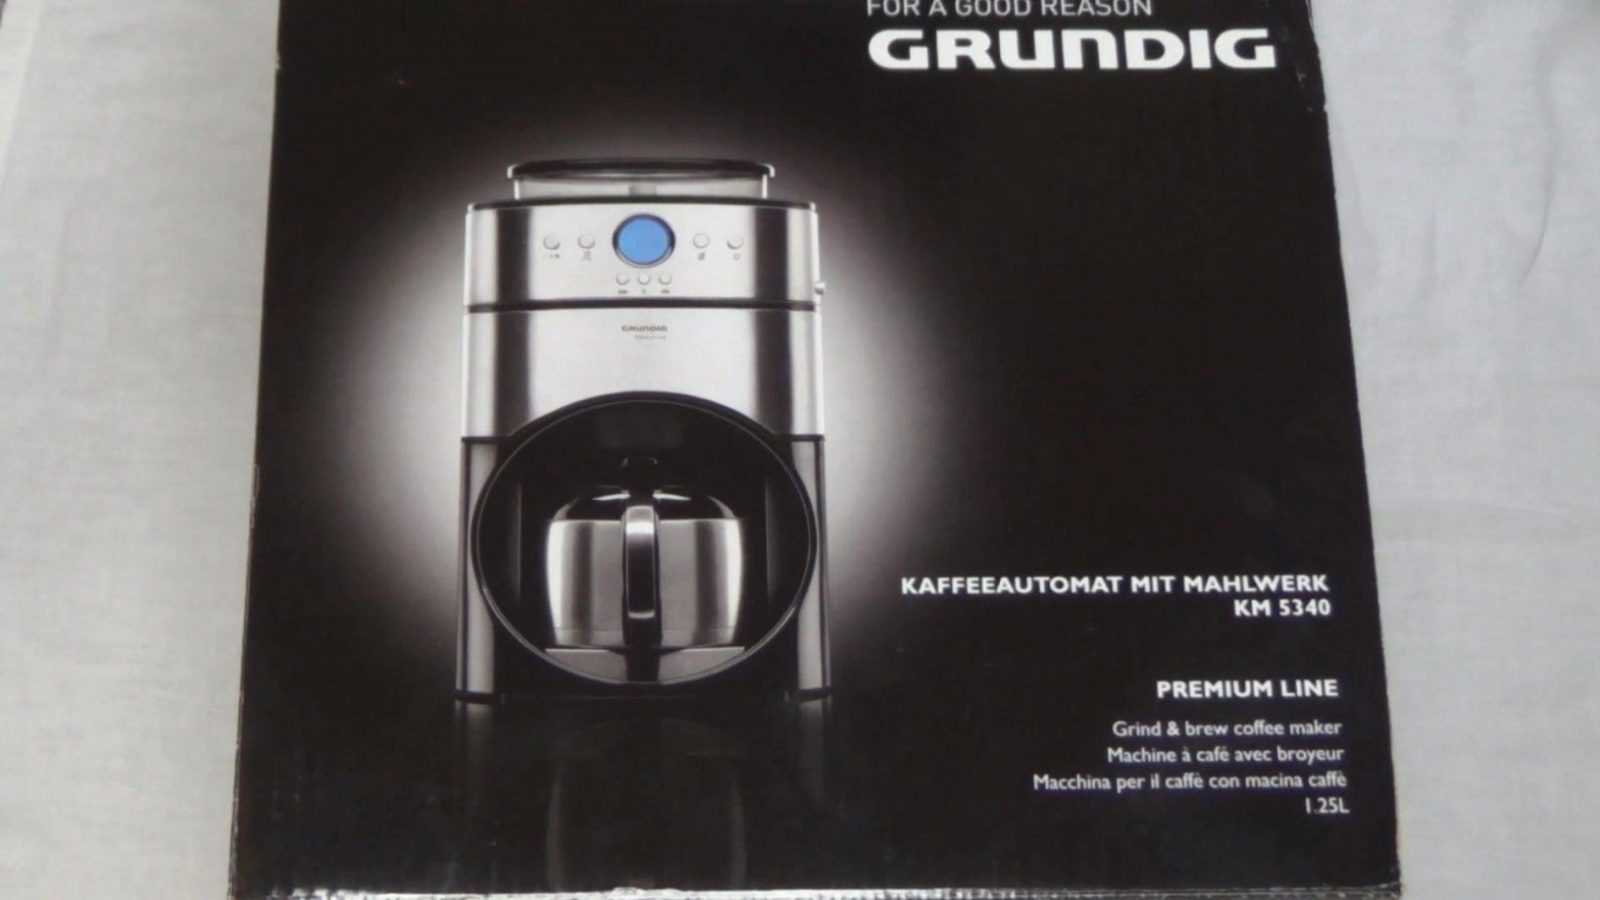 Unboxing ☆ Grundig Km 5340 (Kaffeeautomat Mit Mahlwerk)  Youtube von Grundig Premium Line Kaffeemaschine Bild